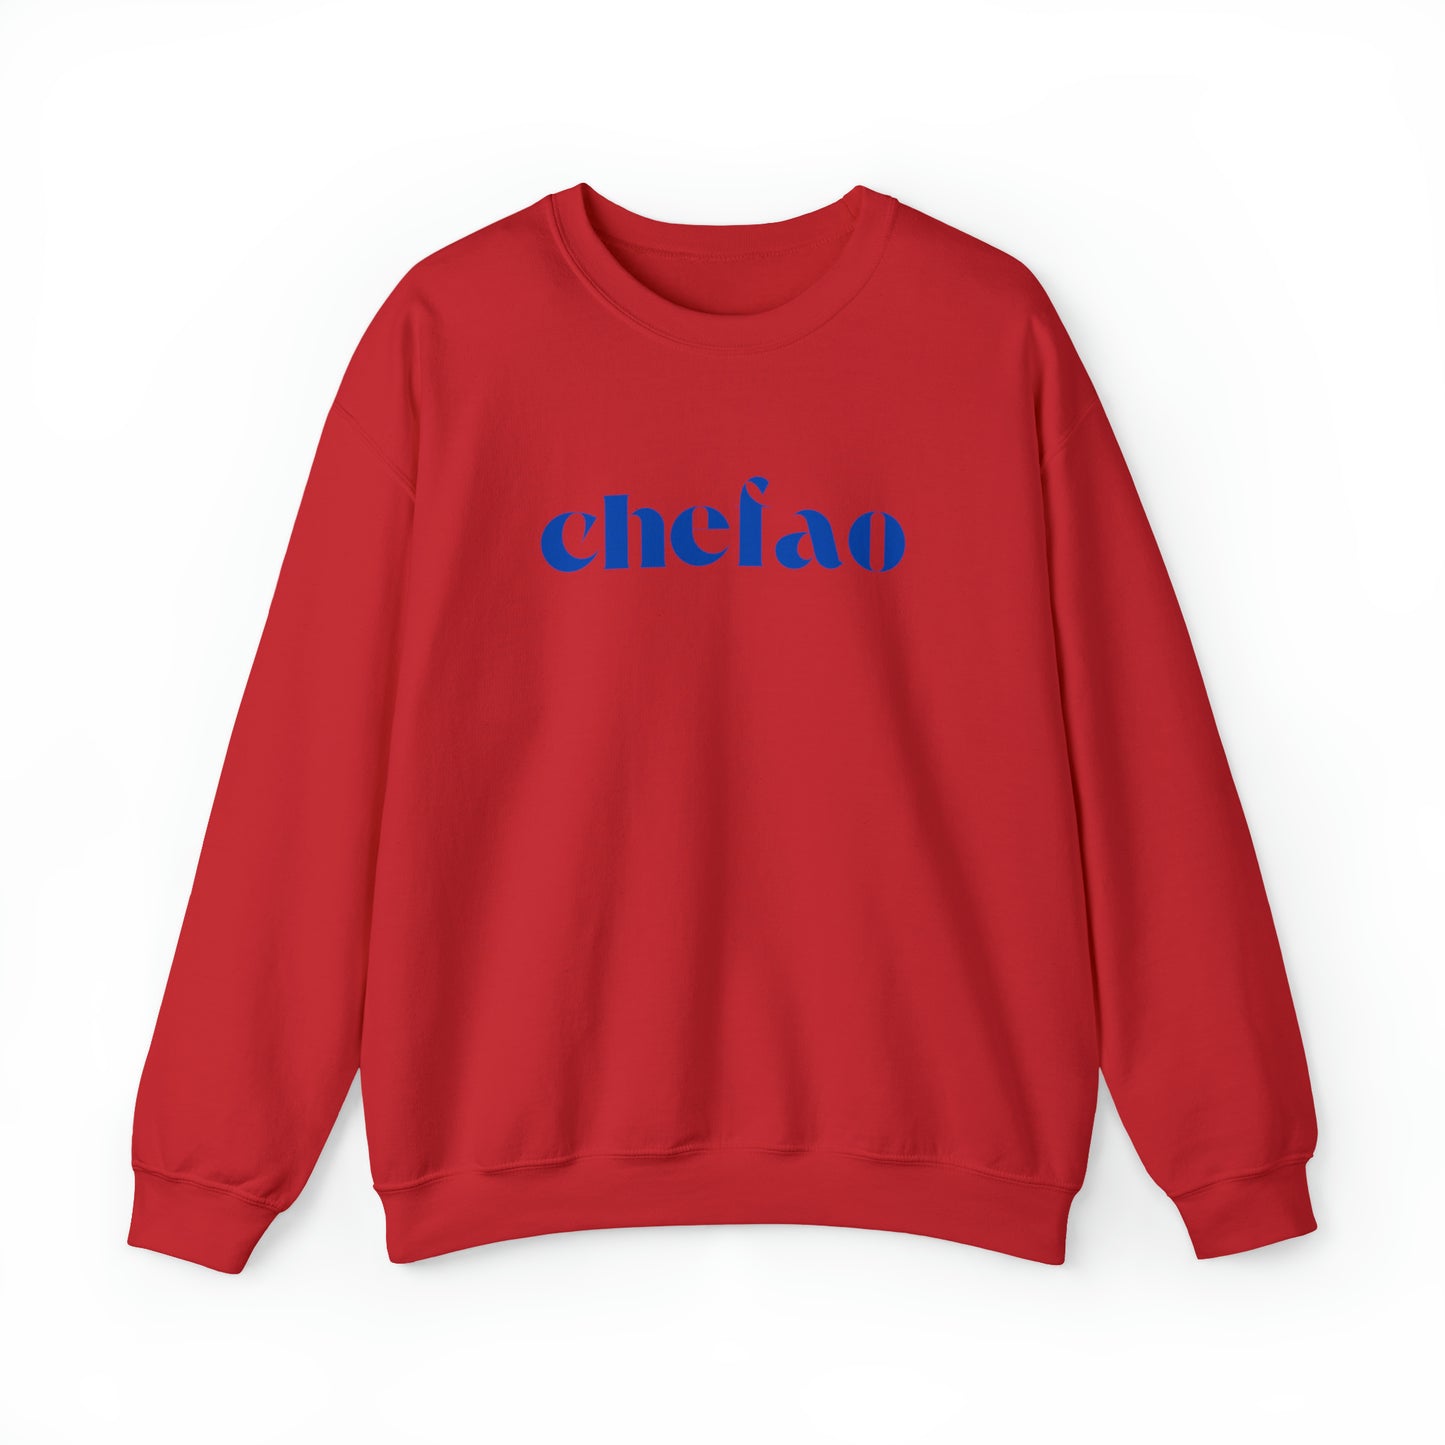 Chefao II, Unisex Heavy Blend Crewneck Sweatshirt